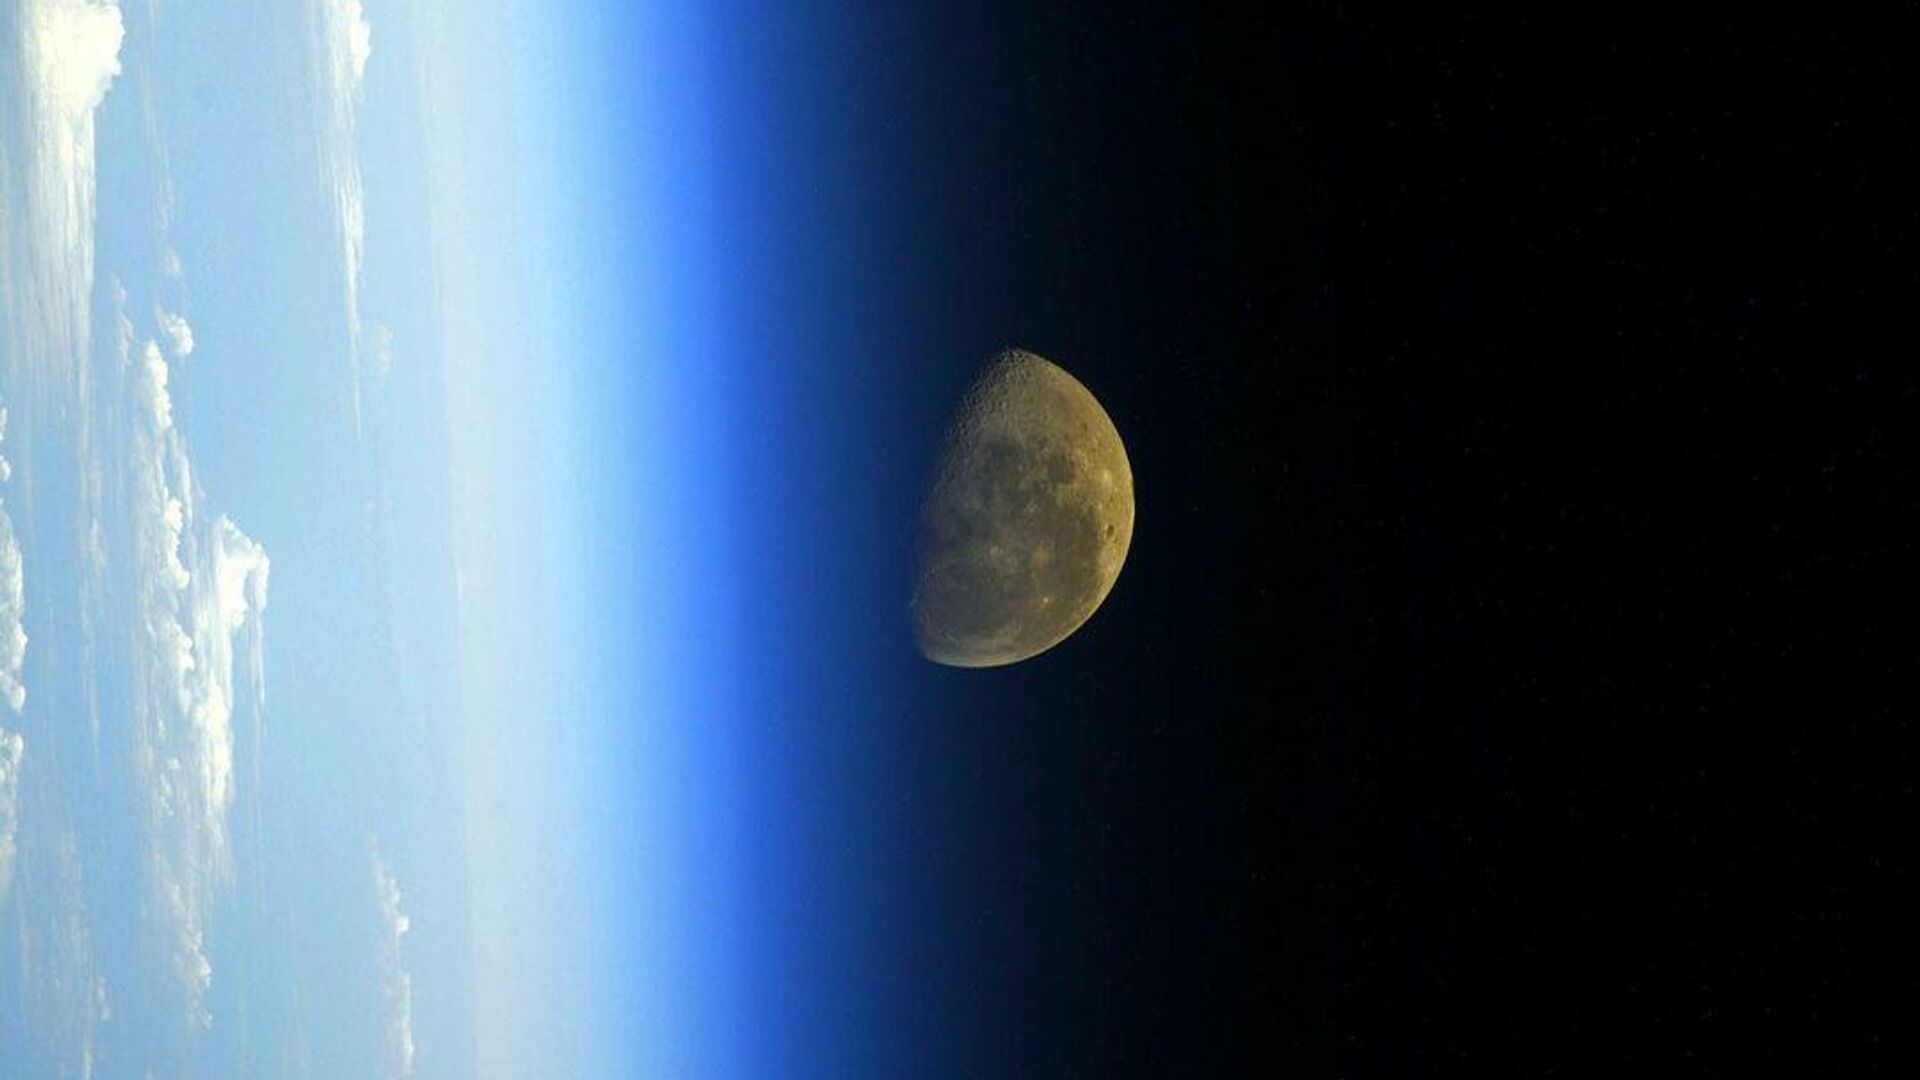 Неисправностей в высотомере станции "Луна-25" не выявили